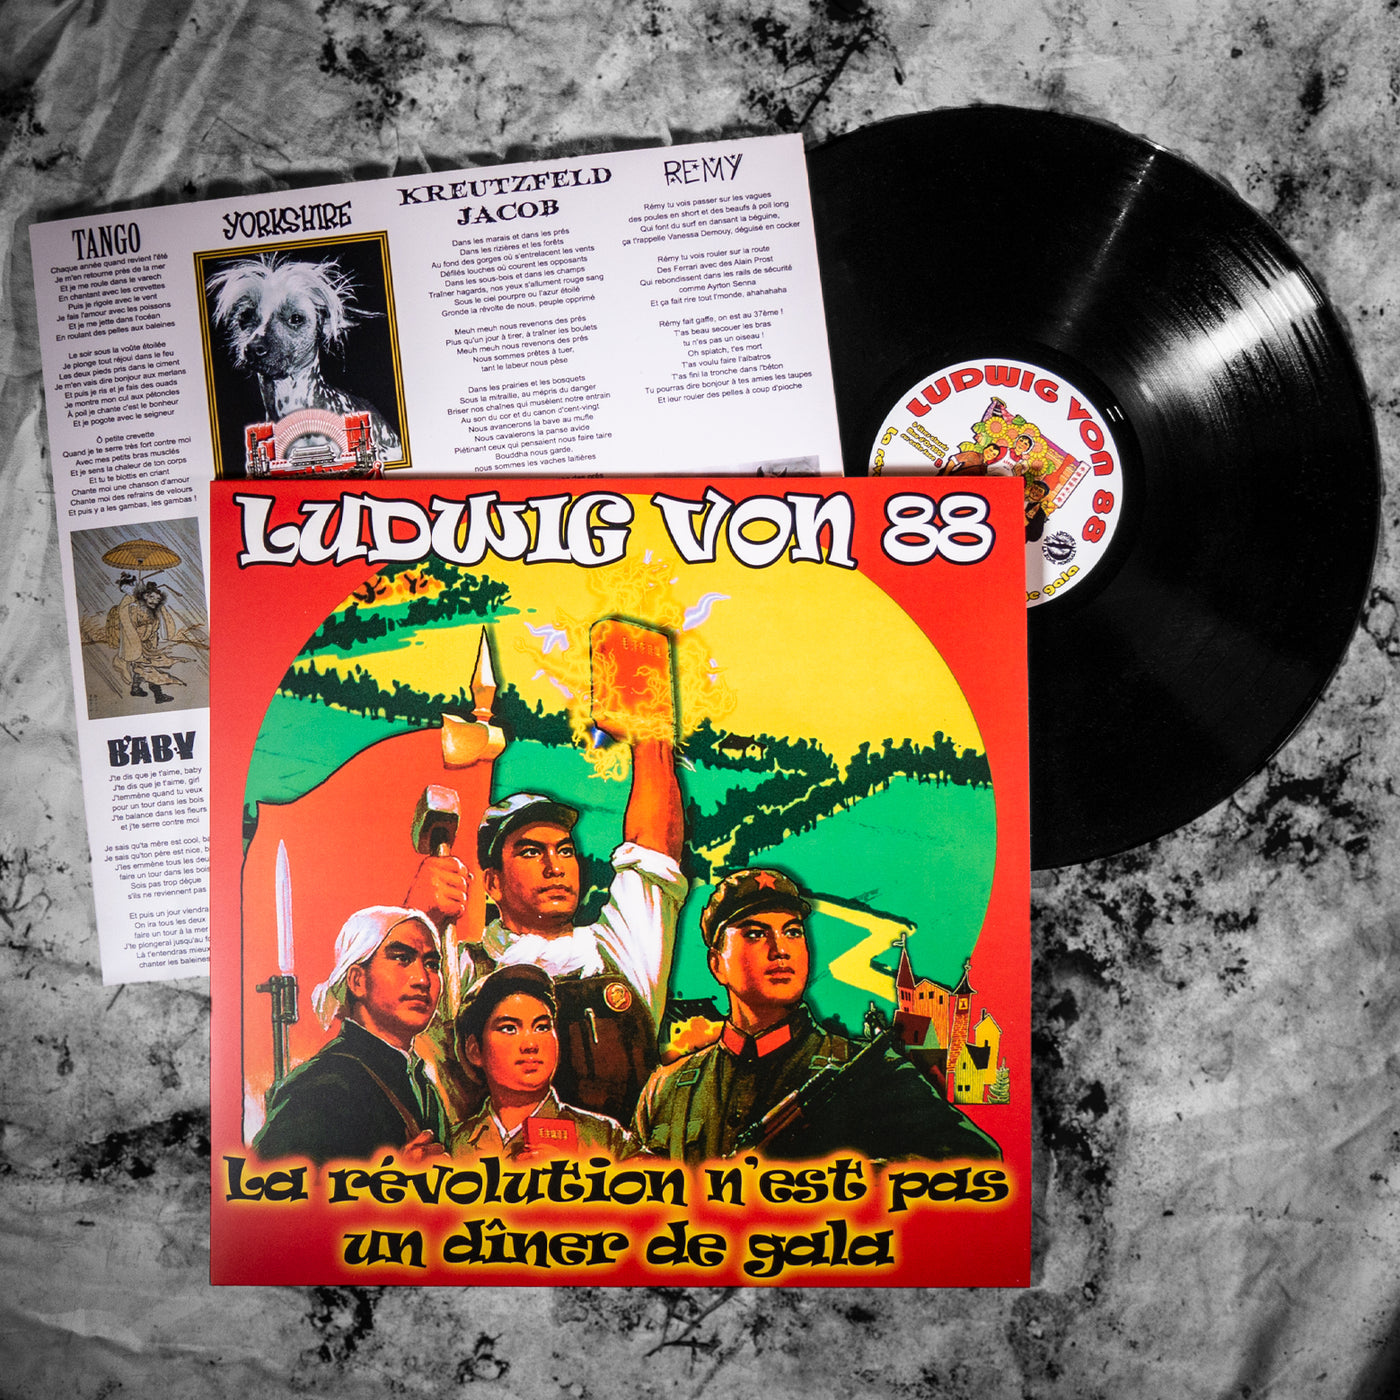 Ludwig Von 88, "La révolution n'est pas un diner de gala", édition simple vinyle, pochette alternative, disque vinyle noir, sous-pochette imprimée avec textes et illustrations